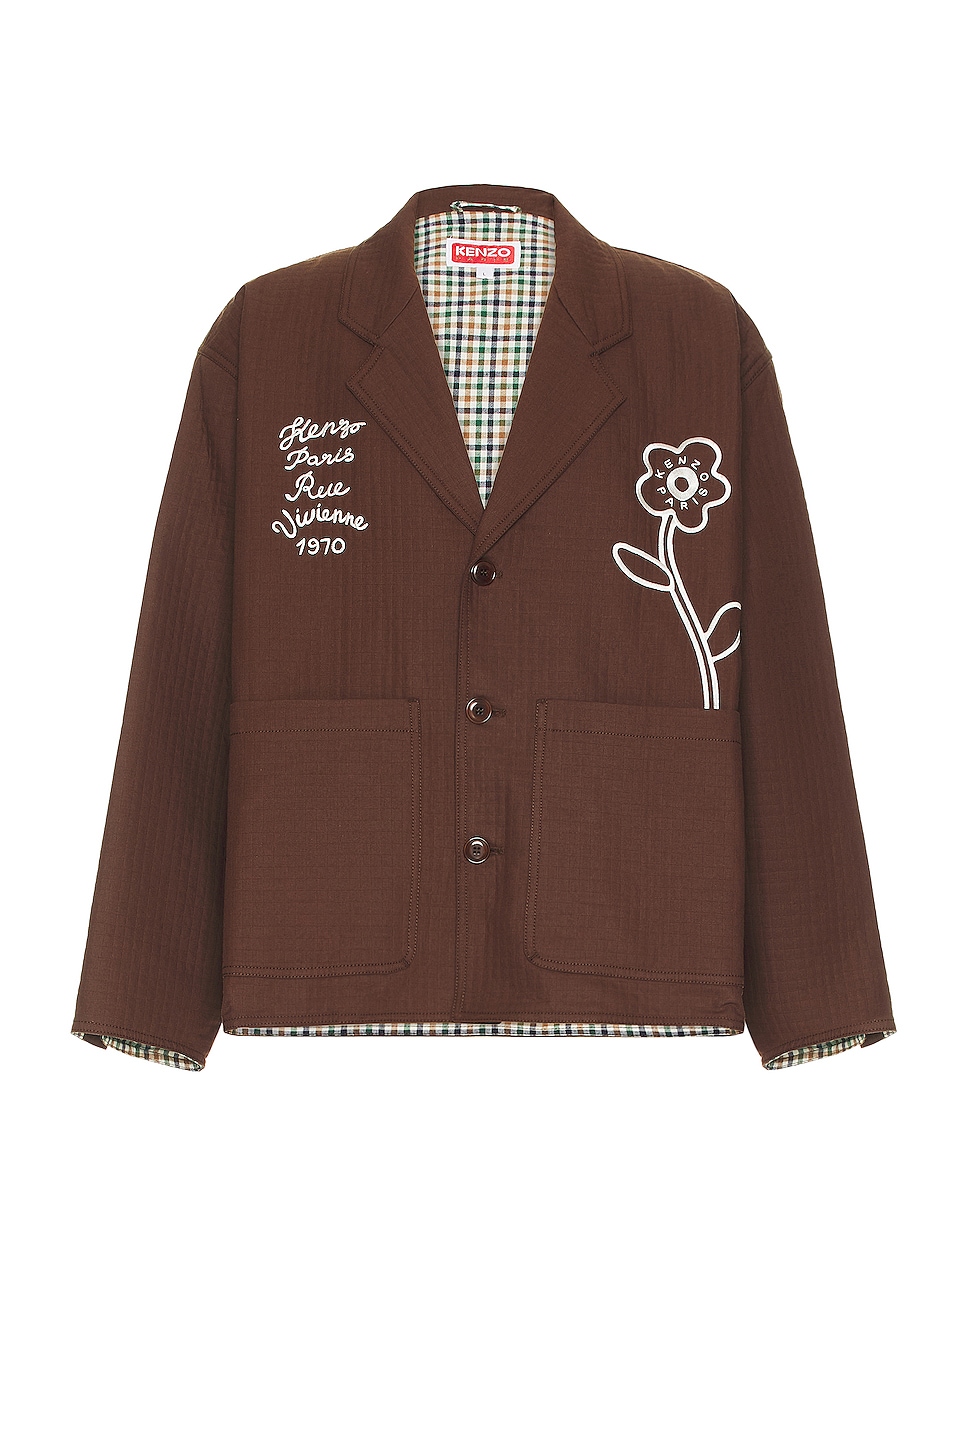 Image 1 of Kenzo Rue Vivienne 1970 Workwear Jacket in Dark Brown